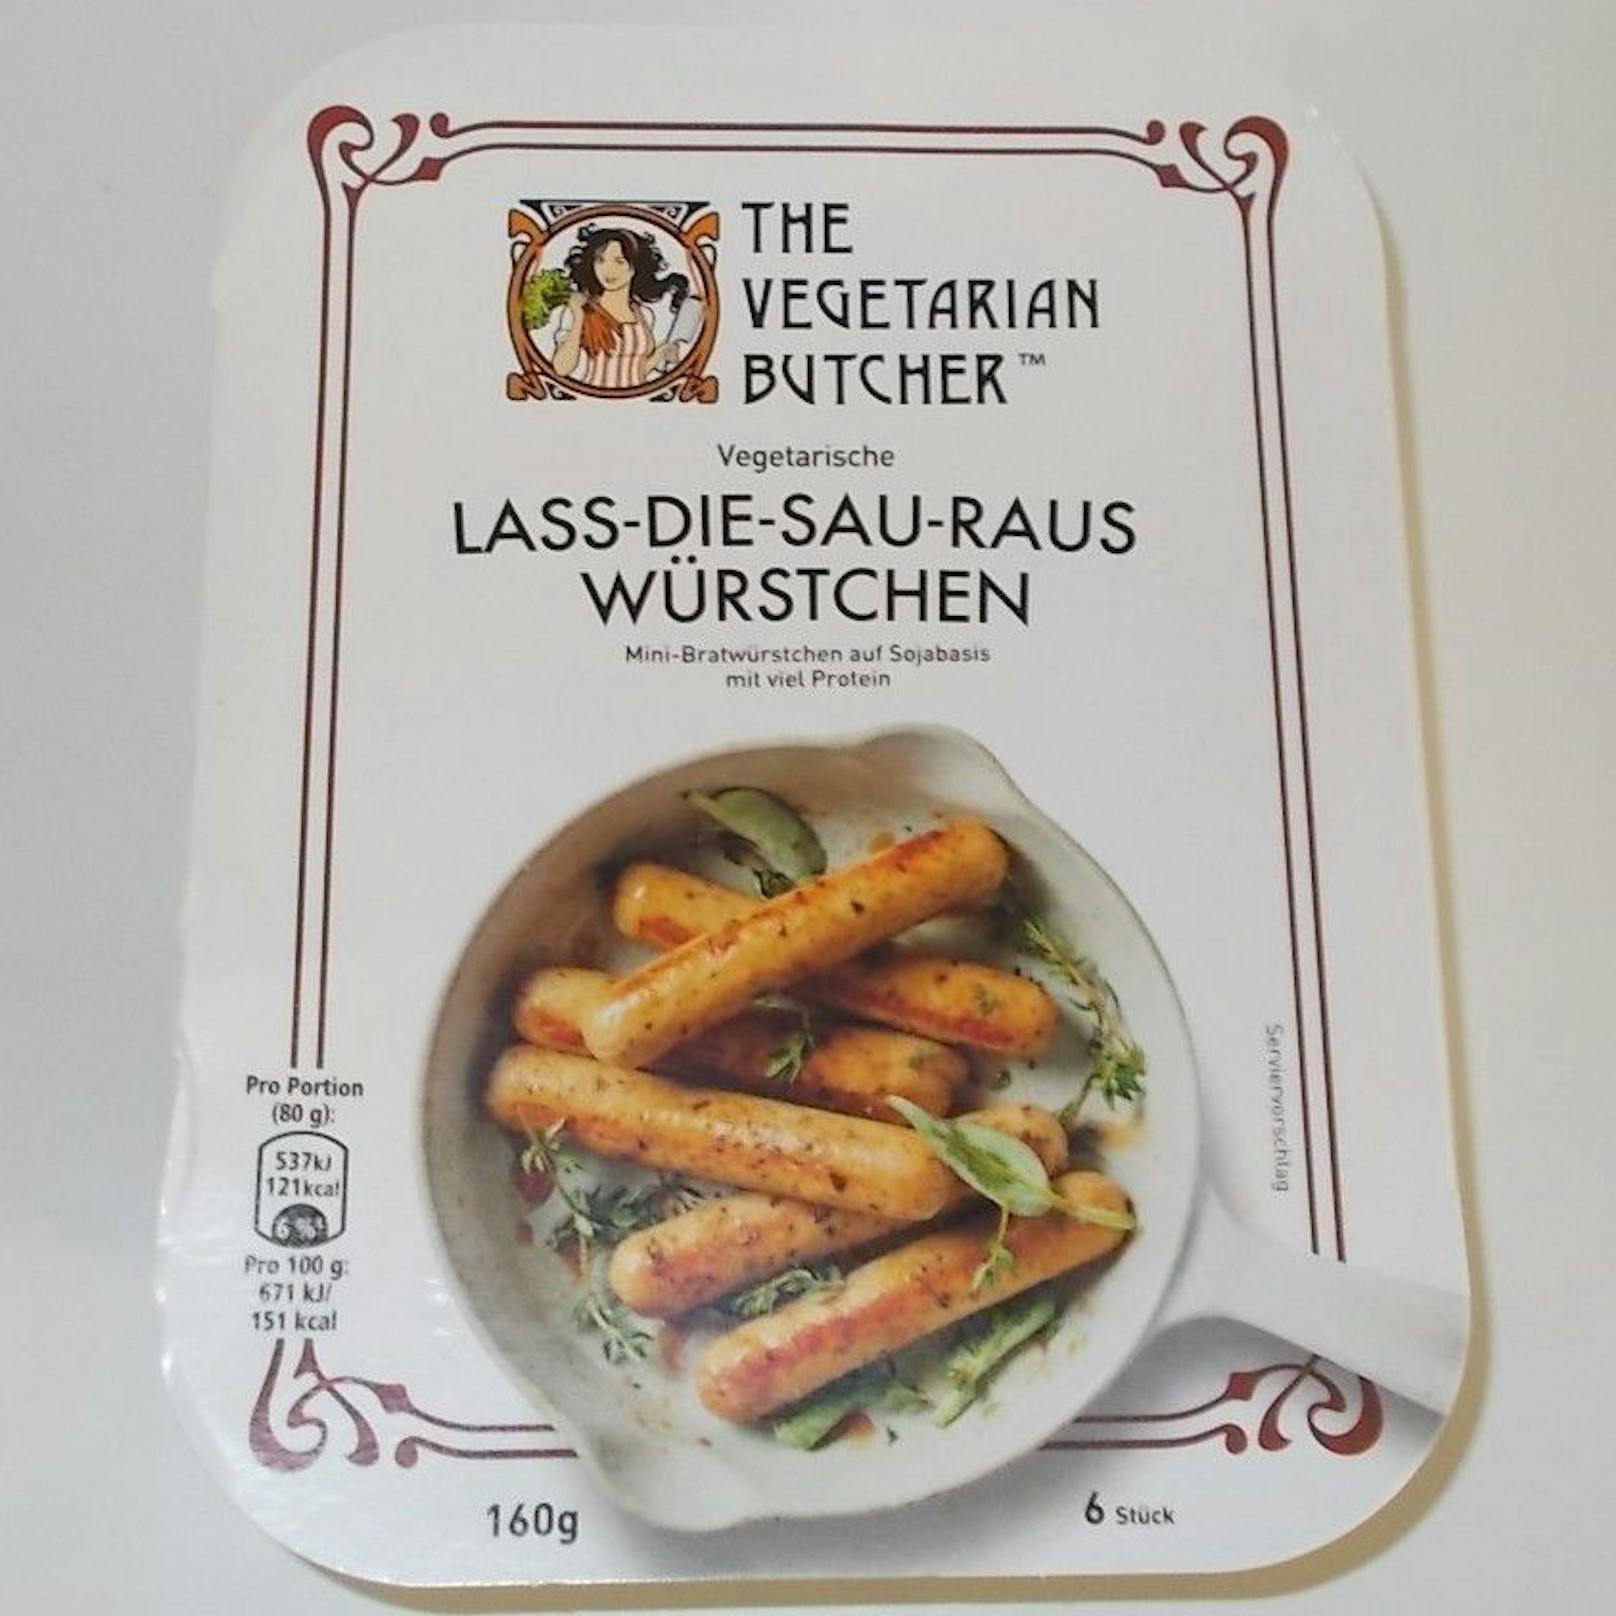 "The Vegetarian Butcher" reagierte sofort und nahm seine "Lass-Die-Sau-Raus Würstchen" aus dem Sortiment.